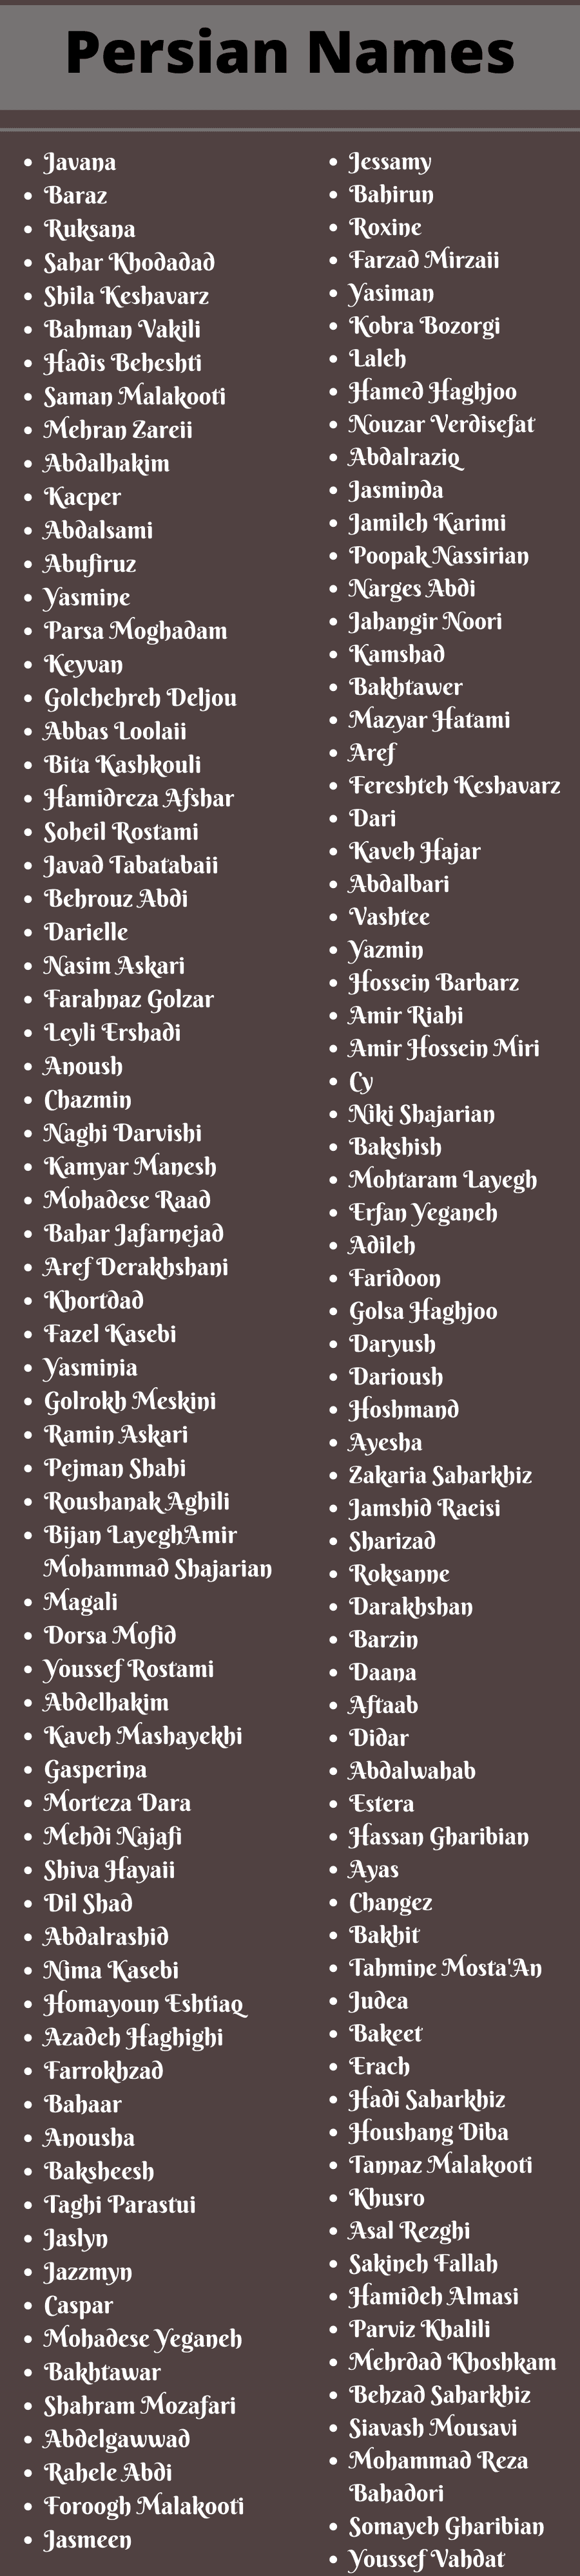 Persian Names